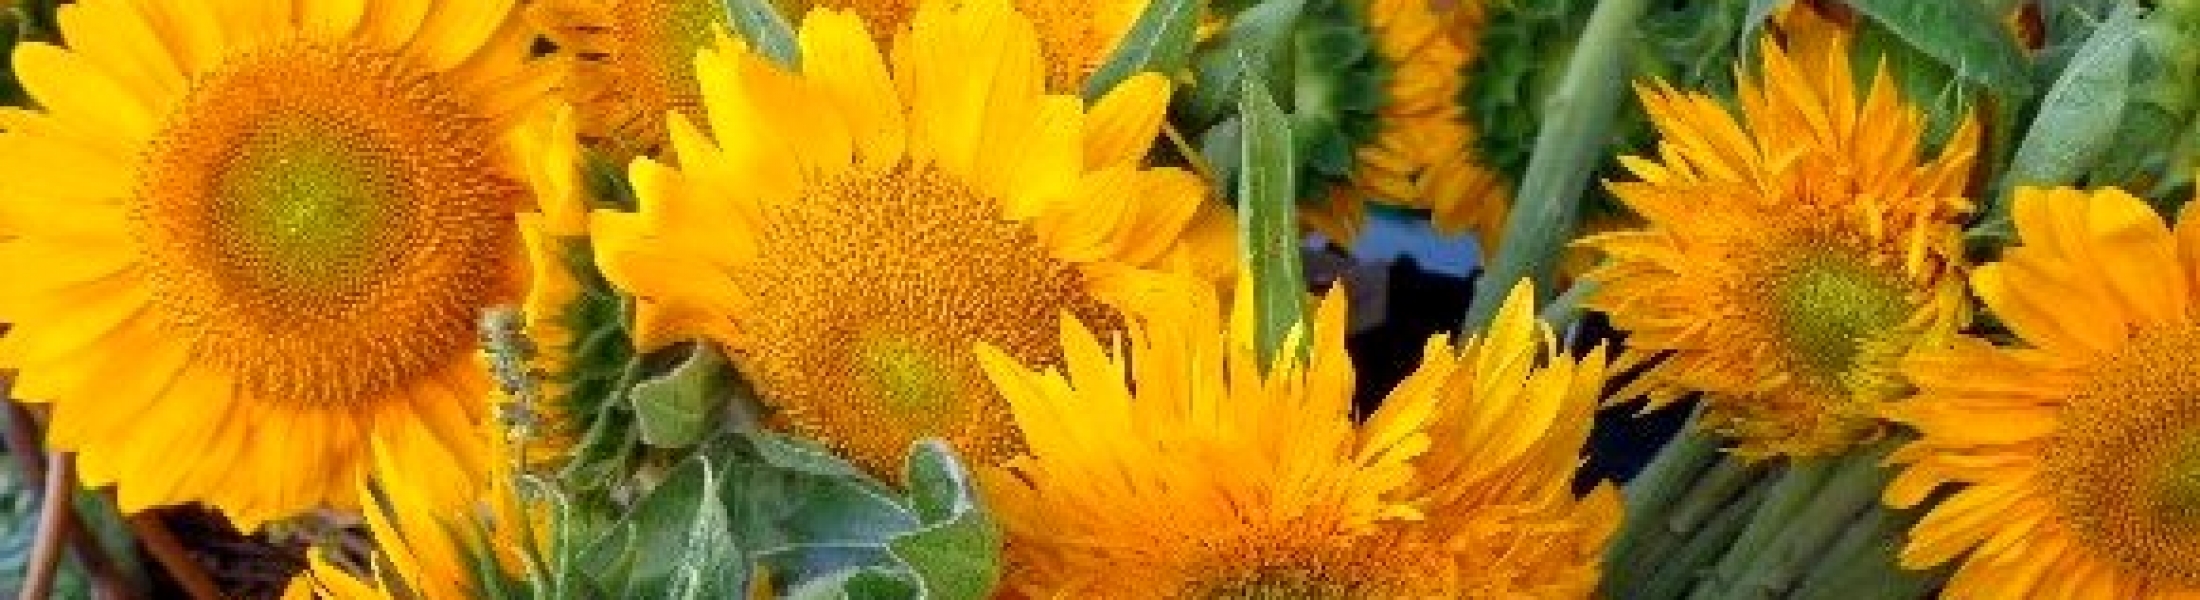 Banner Sunflower – The Farmers Market